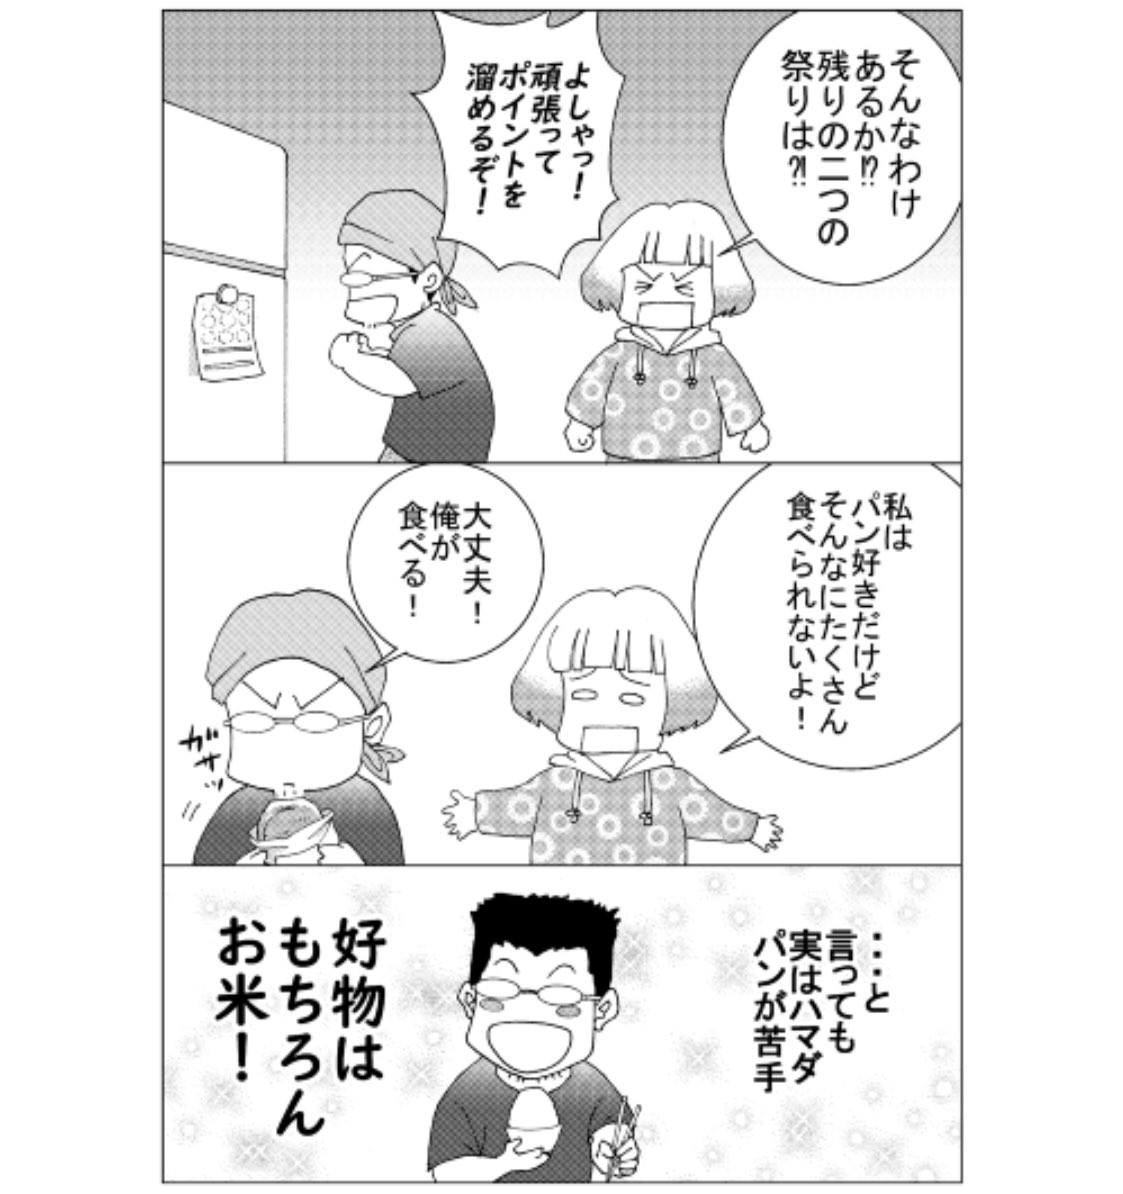 「ハマダは天然色」24をアップしました!
ハマダは日本3大祭りに参戦!!!!

Pixiv:
https://t.co/e4QsP9aekU

拡大して見たい方:
https://t.co/rPDJtPBMHF

#漫画が読めるハッシュタグ 
#エッセイ漫画 
#国際結婚 
#創作漫画 